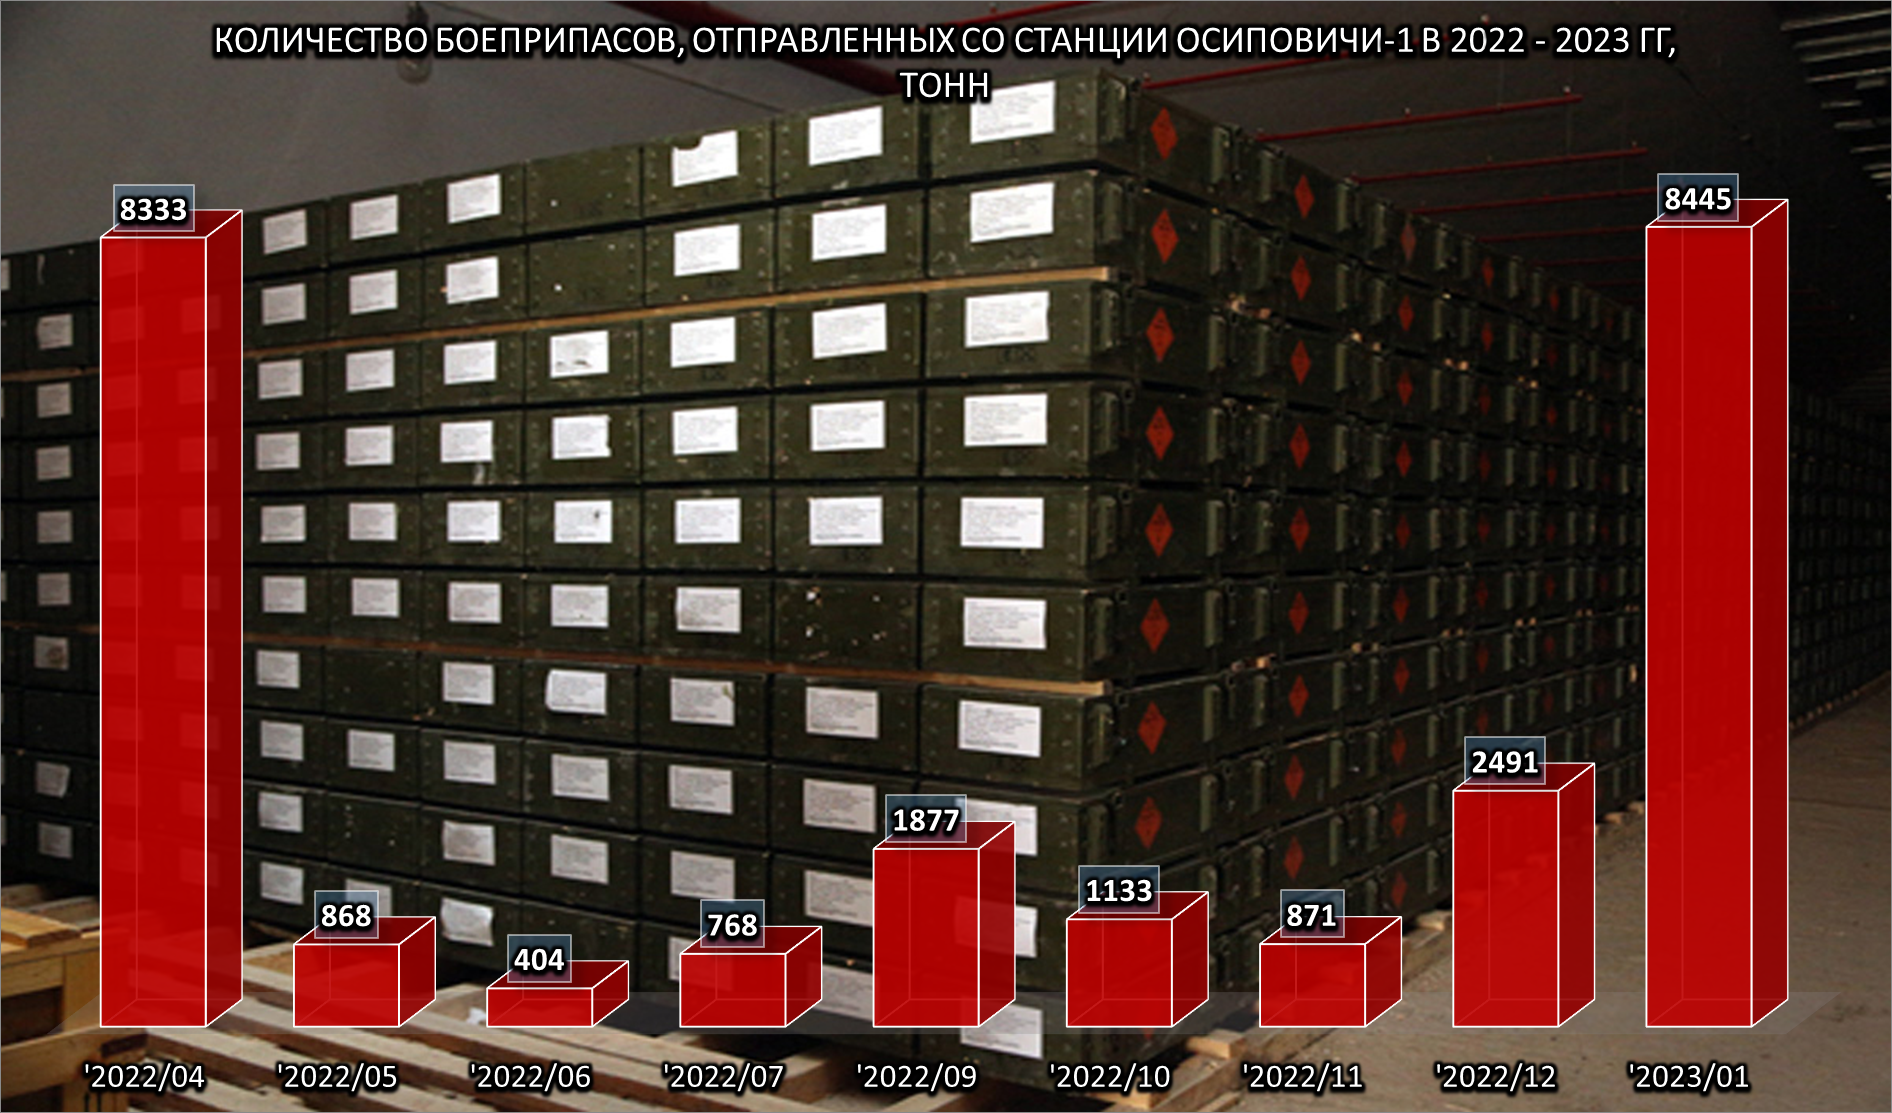 3. Количество боеприпасов, отправленных со станции Осиповичи-1